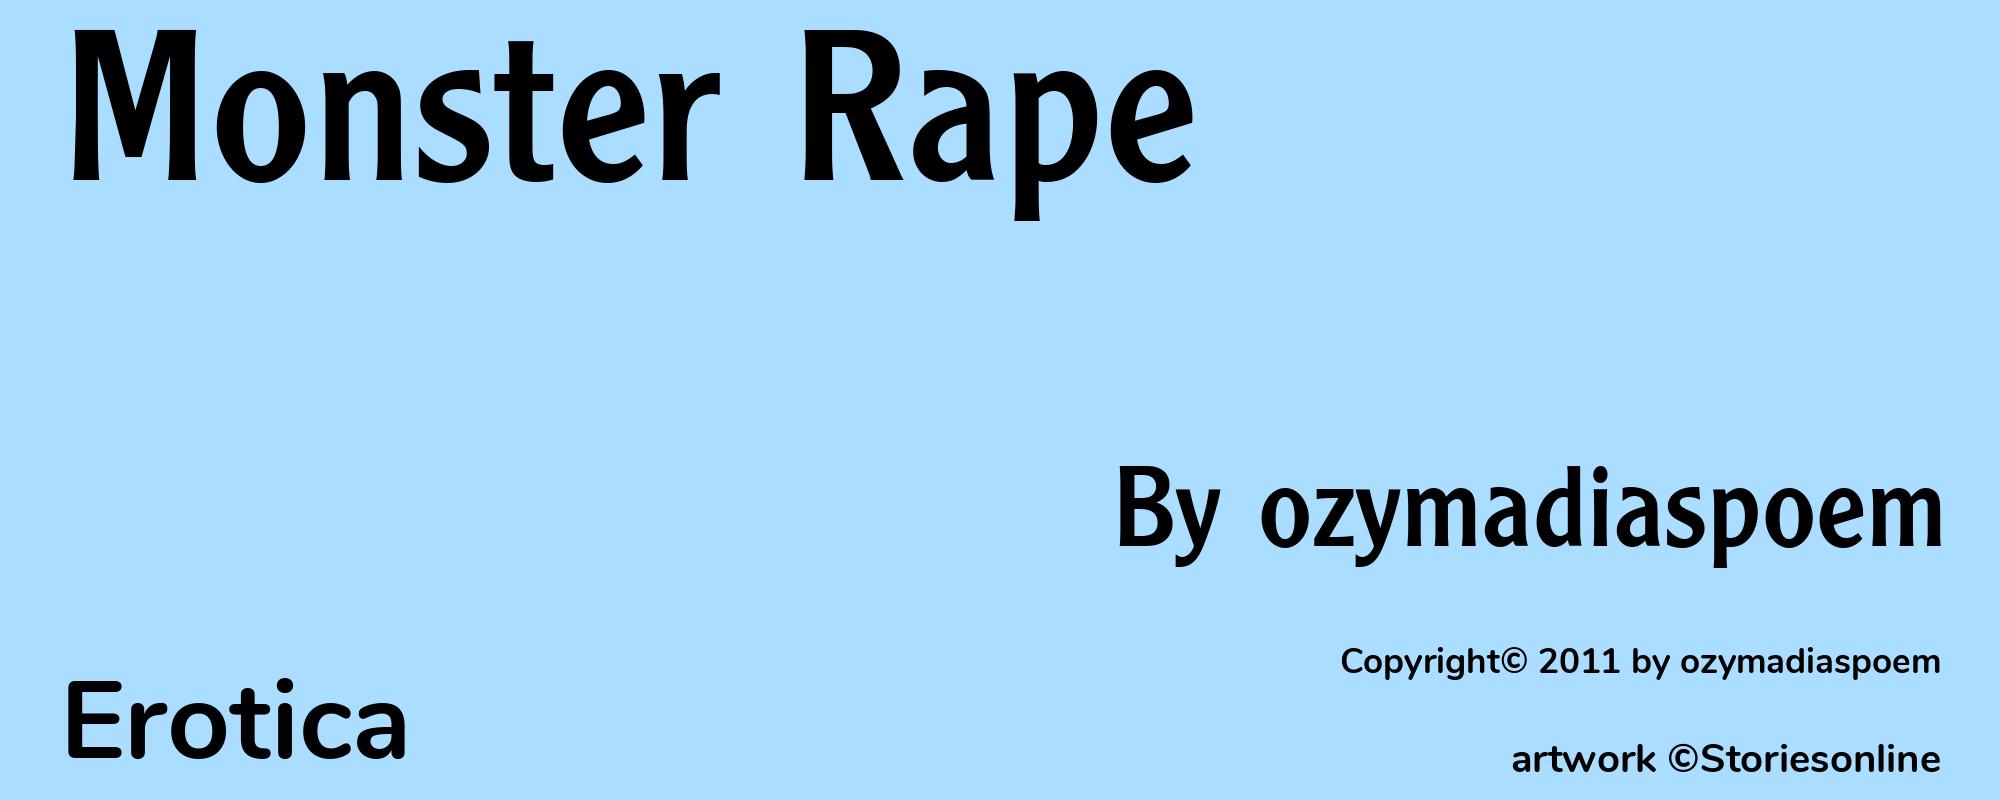 Monster Rape - Cover